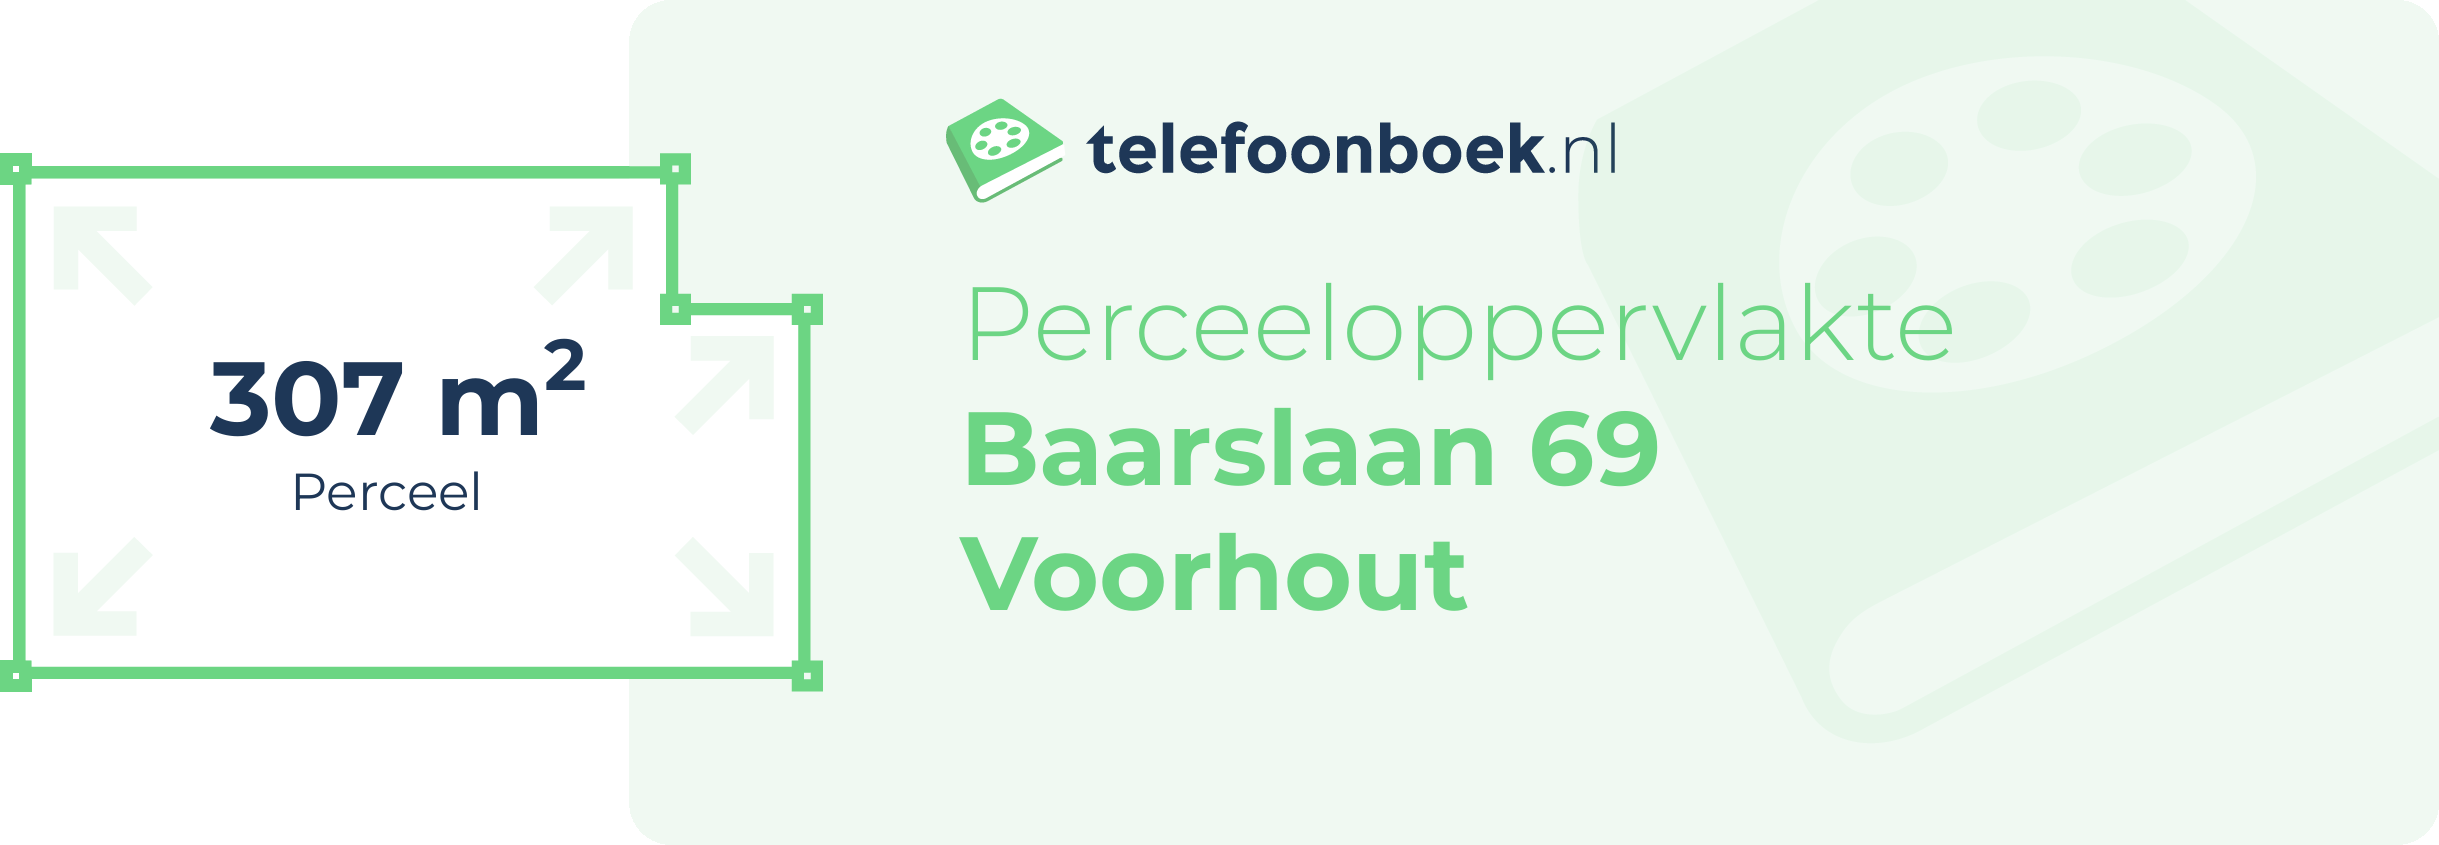 Perceeloppervlakte Baarslaan 69 Voorhout